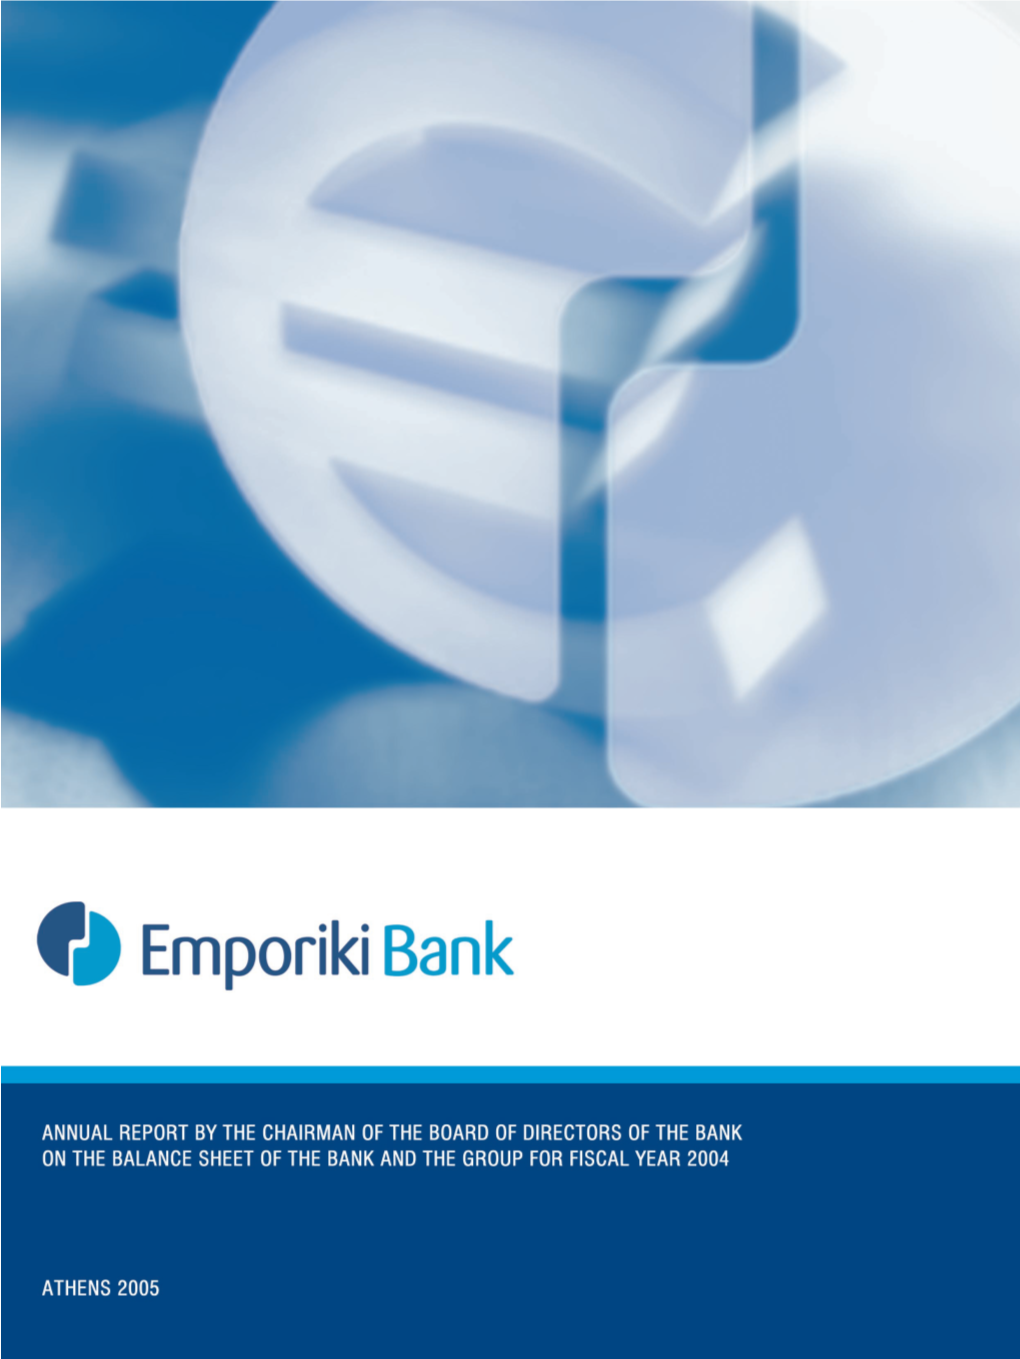 6. Activities of Emporiki Bank Group